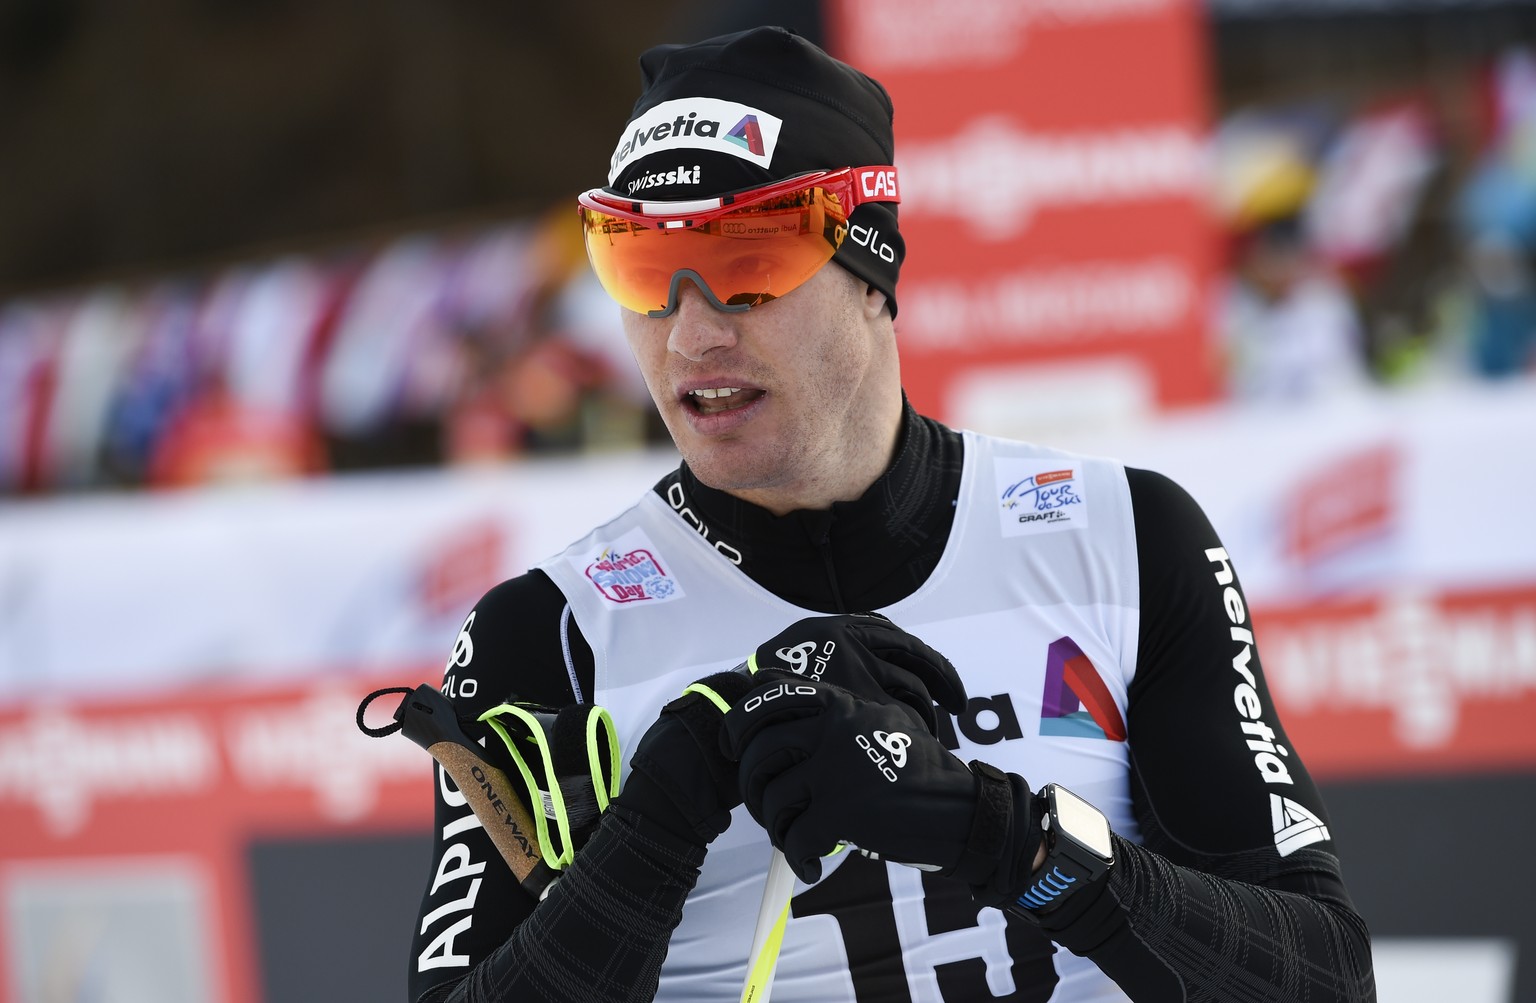 Zufrieden: Cologna schliesst die Tour de Ski auf dem 5. Rang ab.